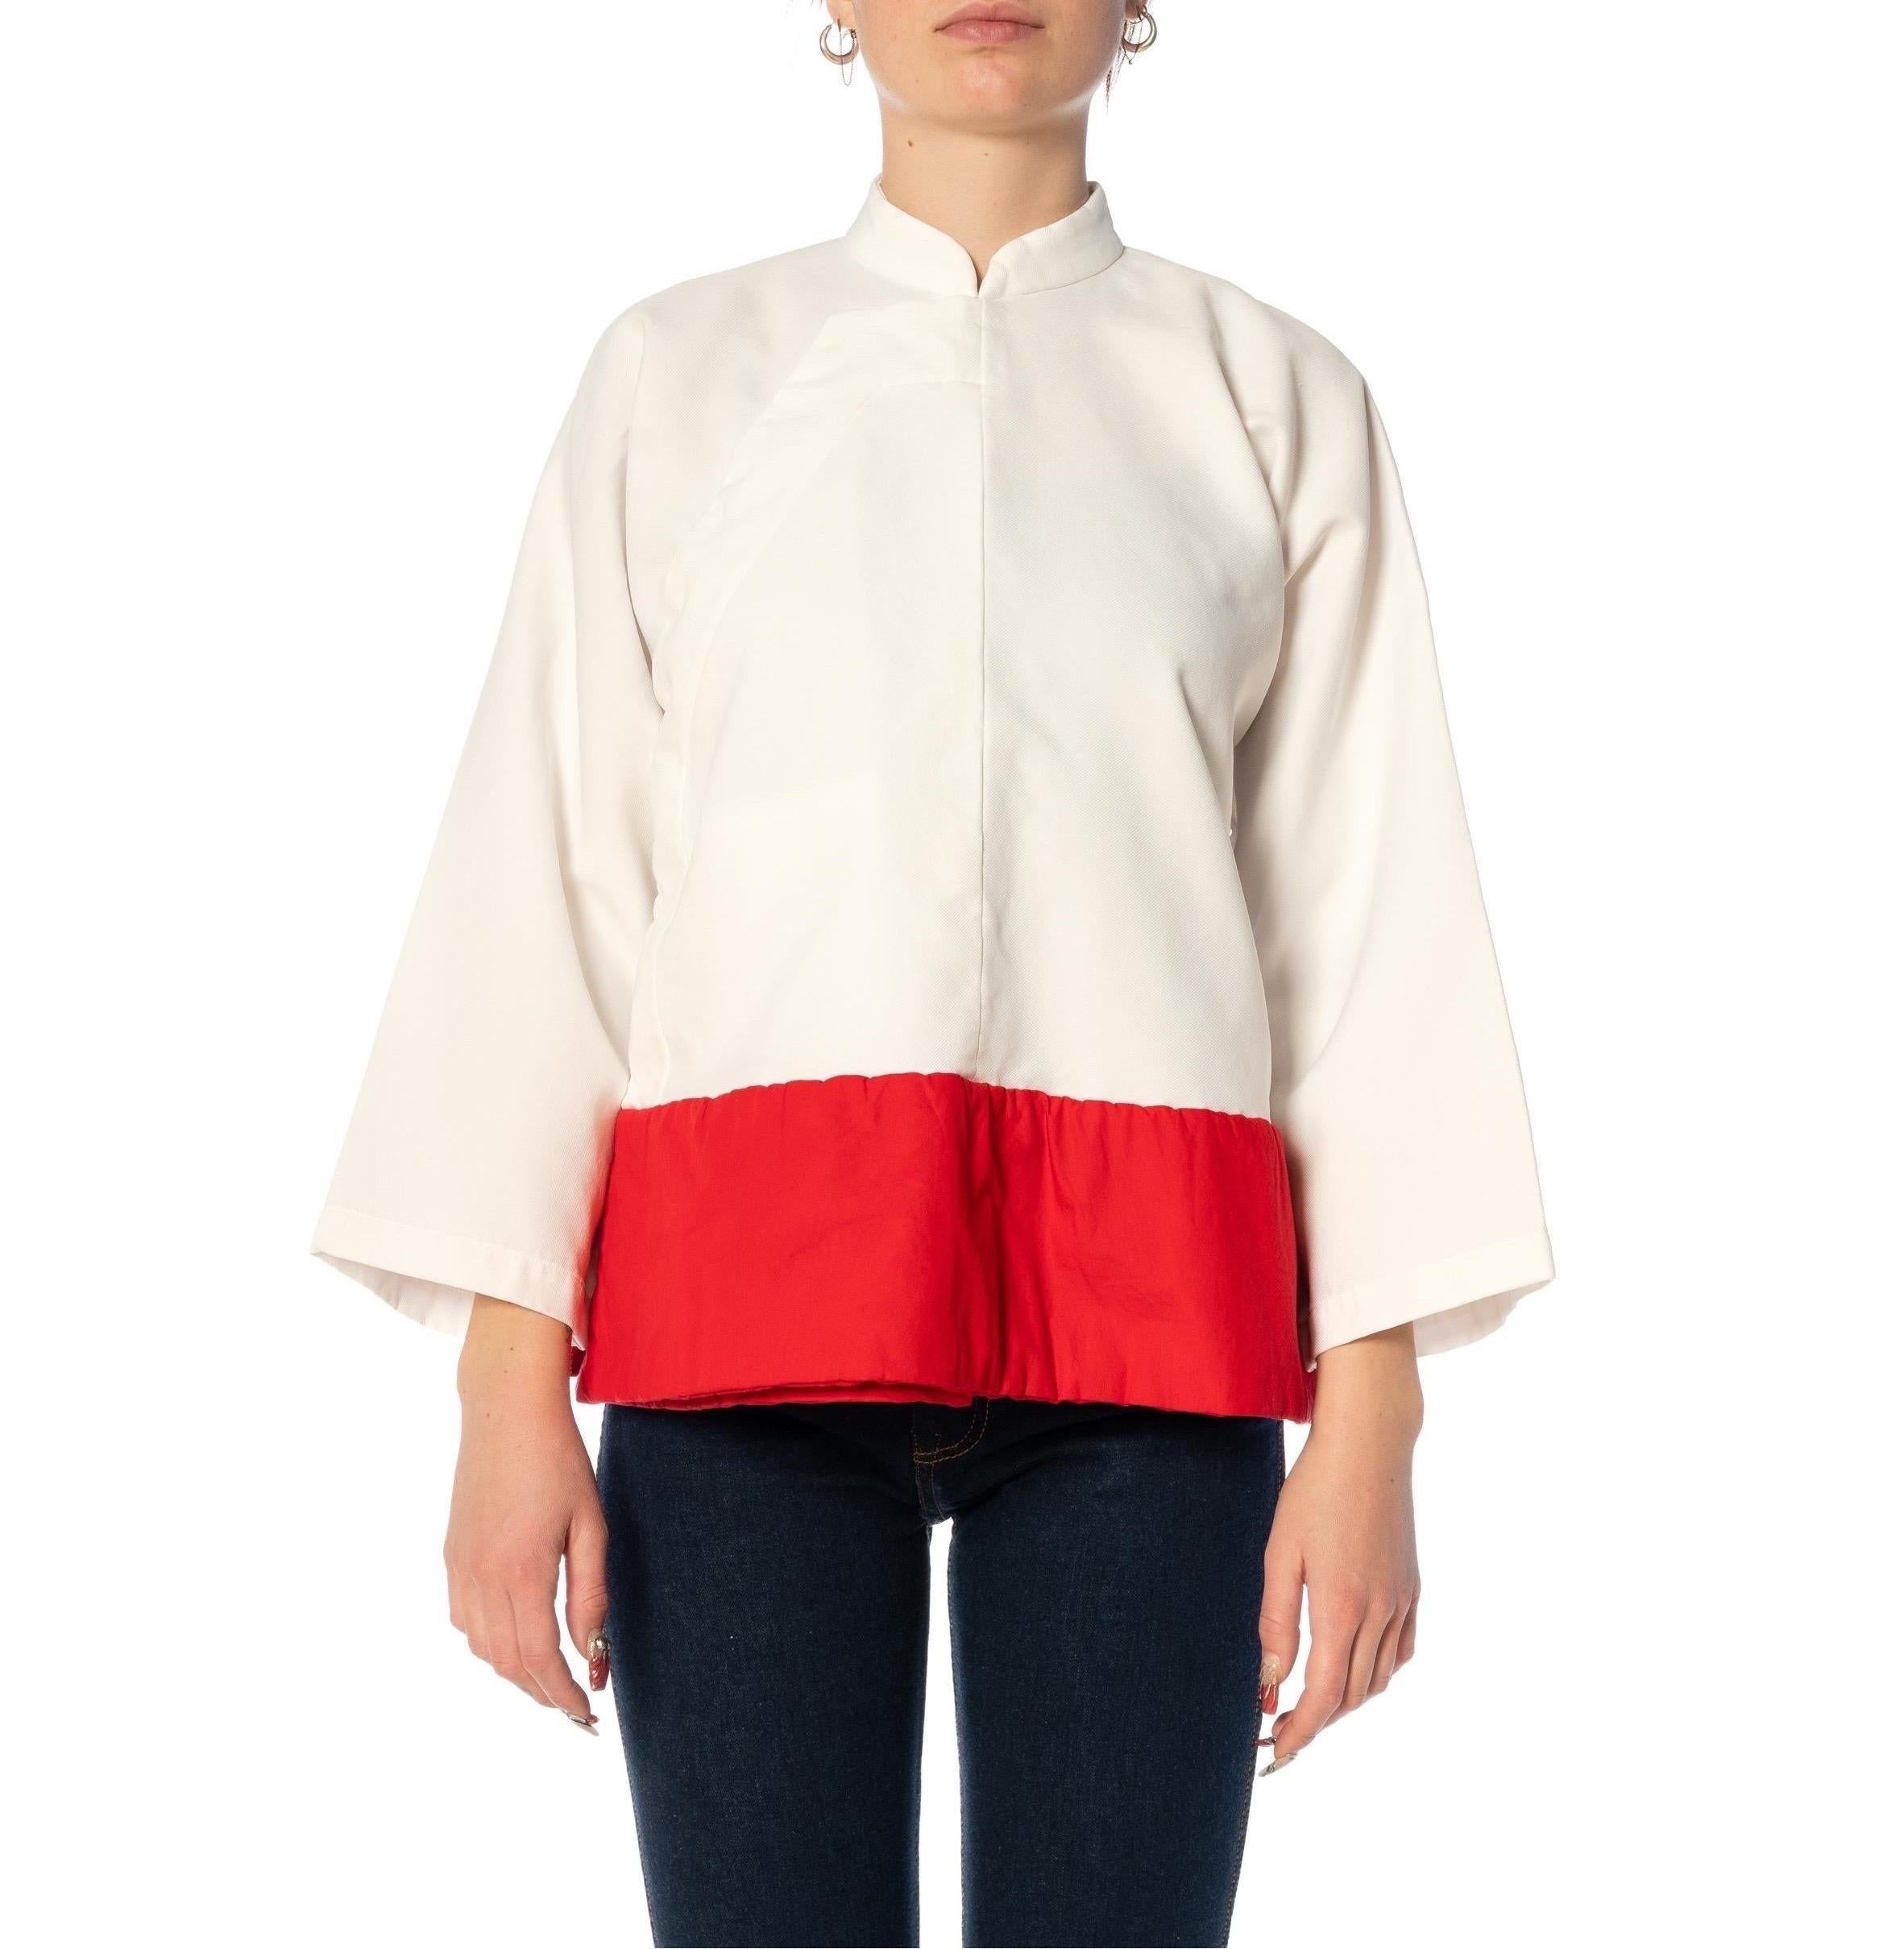 2010S COMME DES GARCONS Veste chinoise en poly coton blanc et rouge avec col mandarin 2022